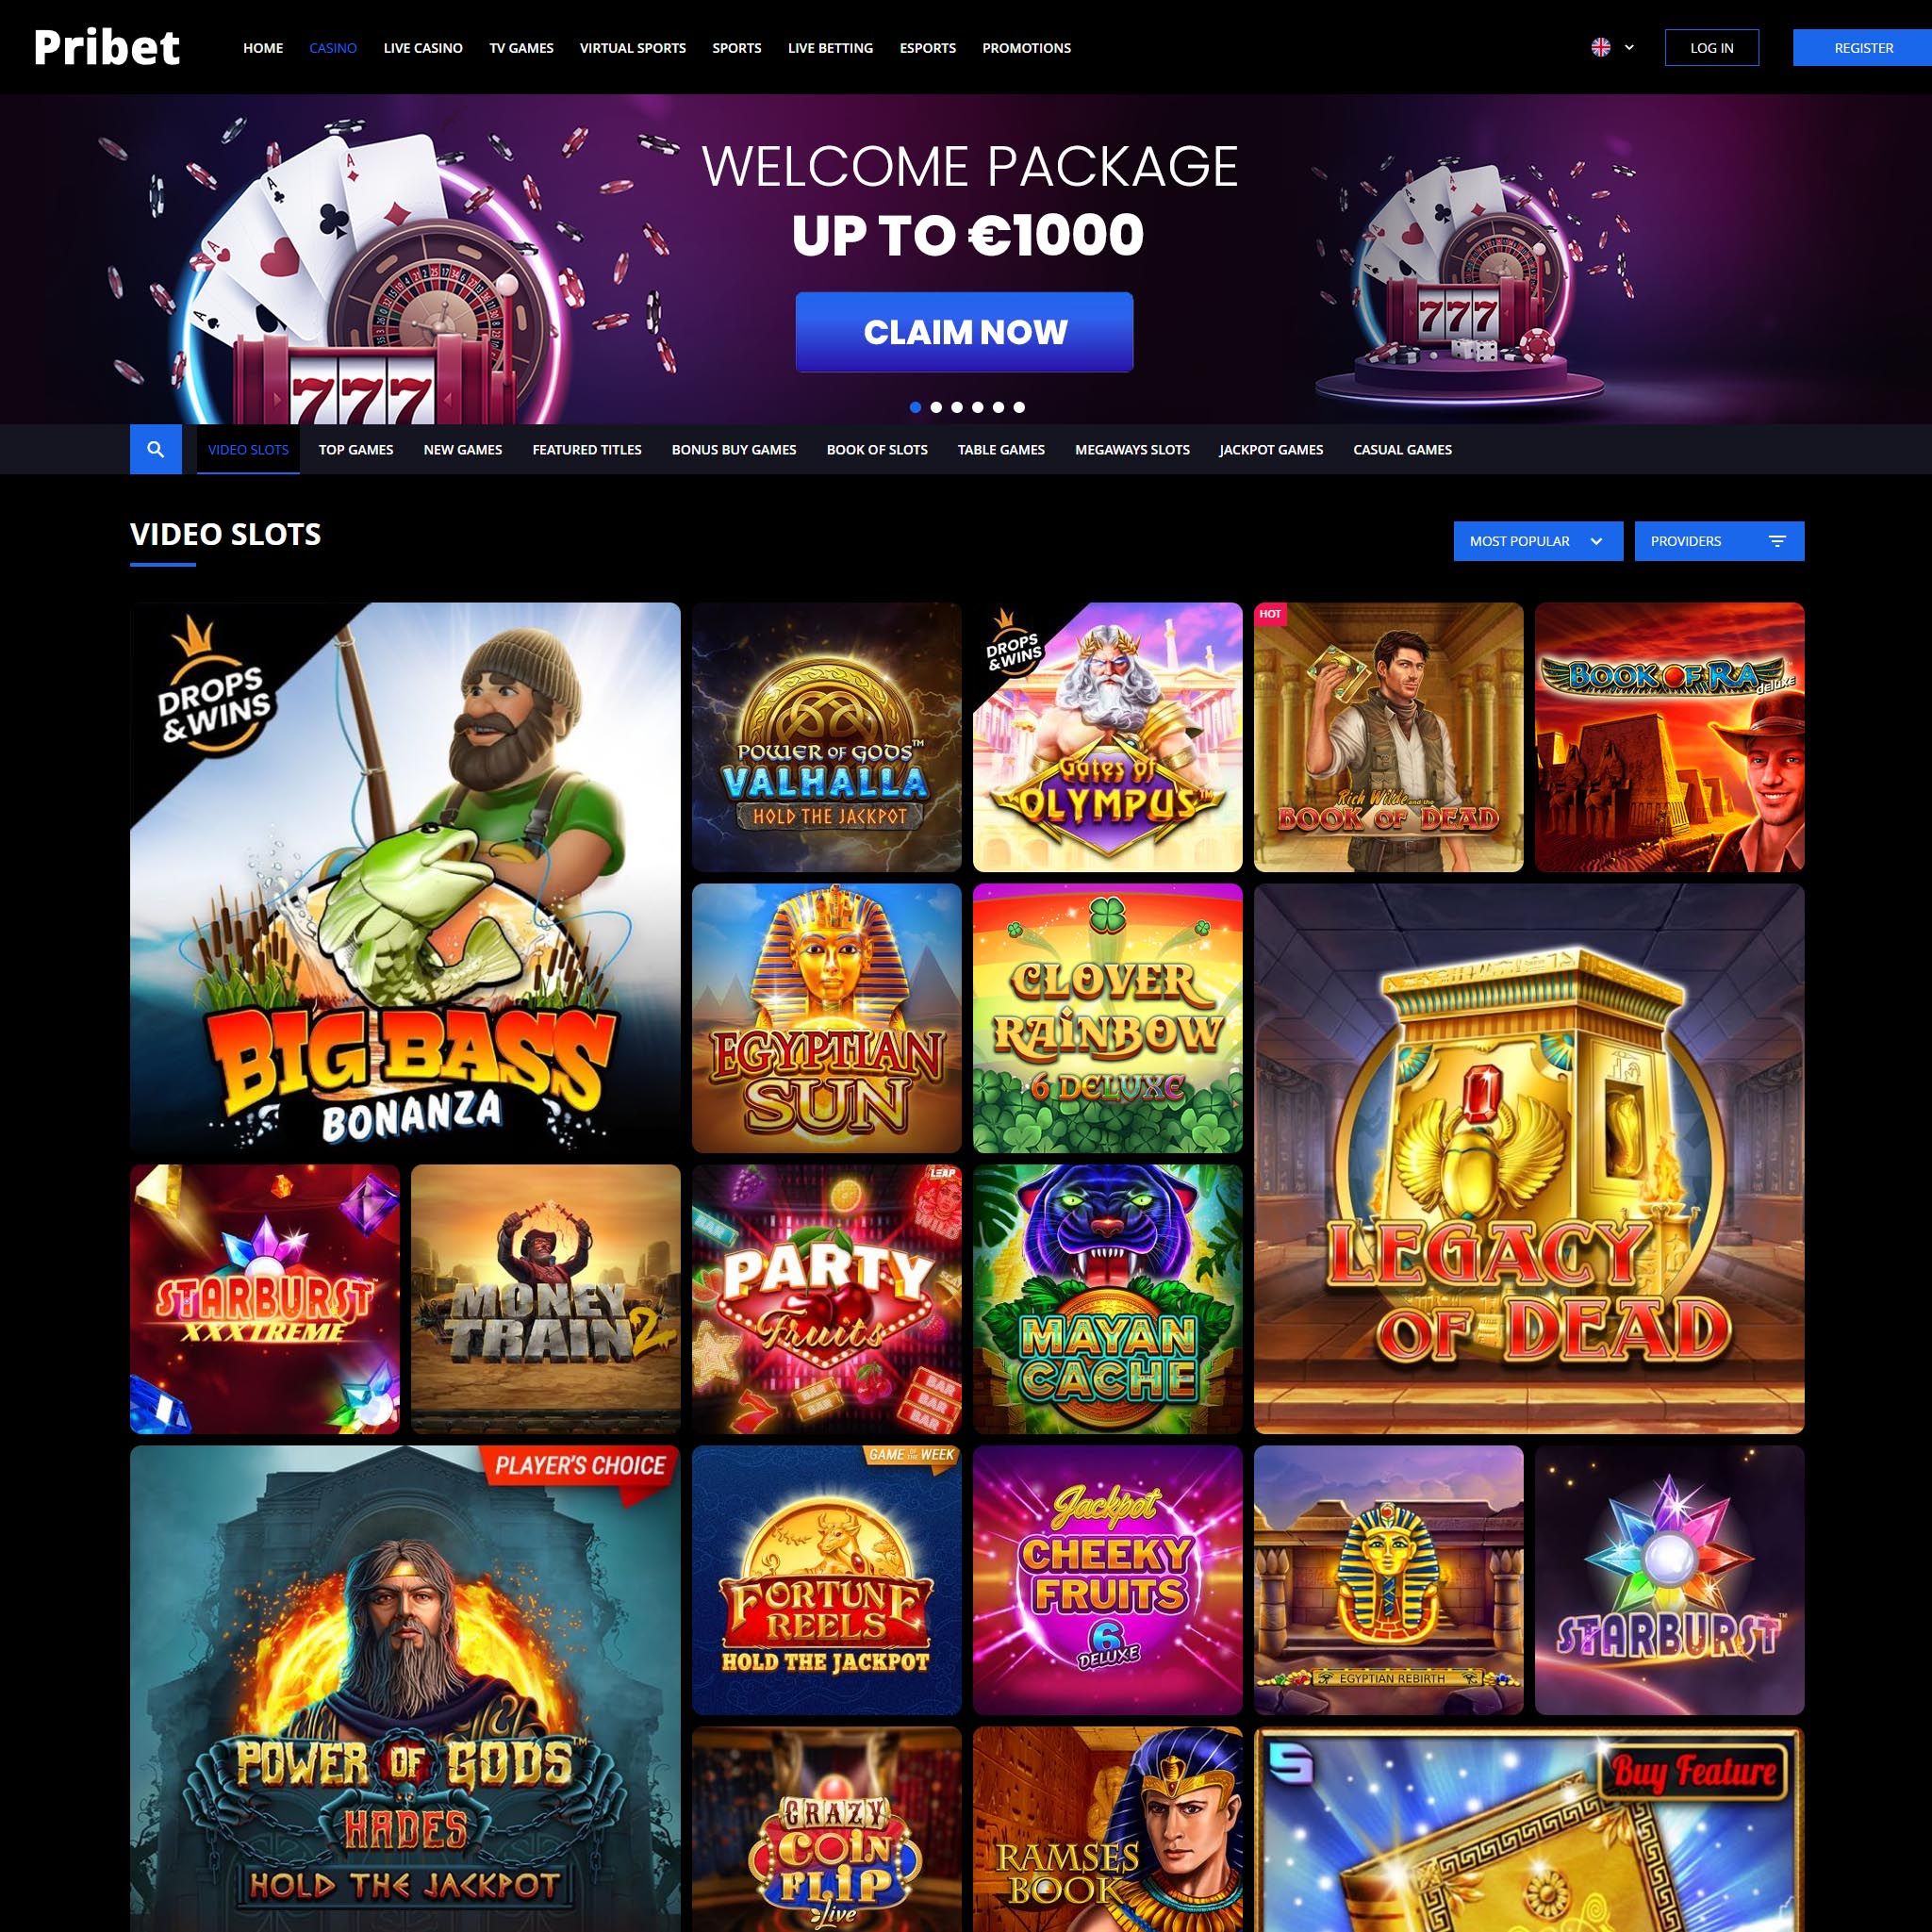 Pribet Casino full games catalogue